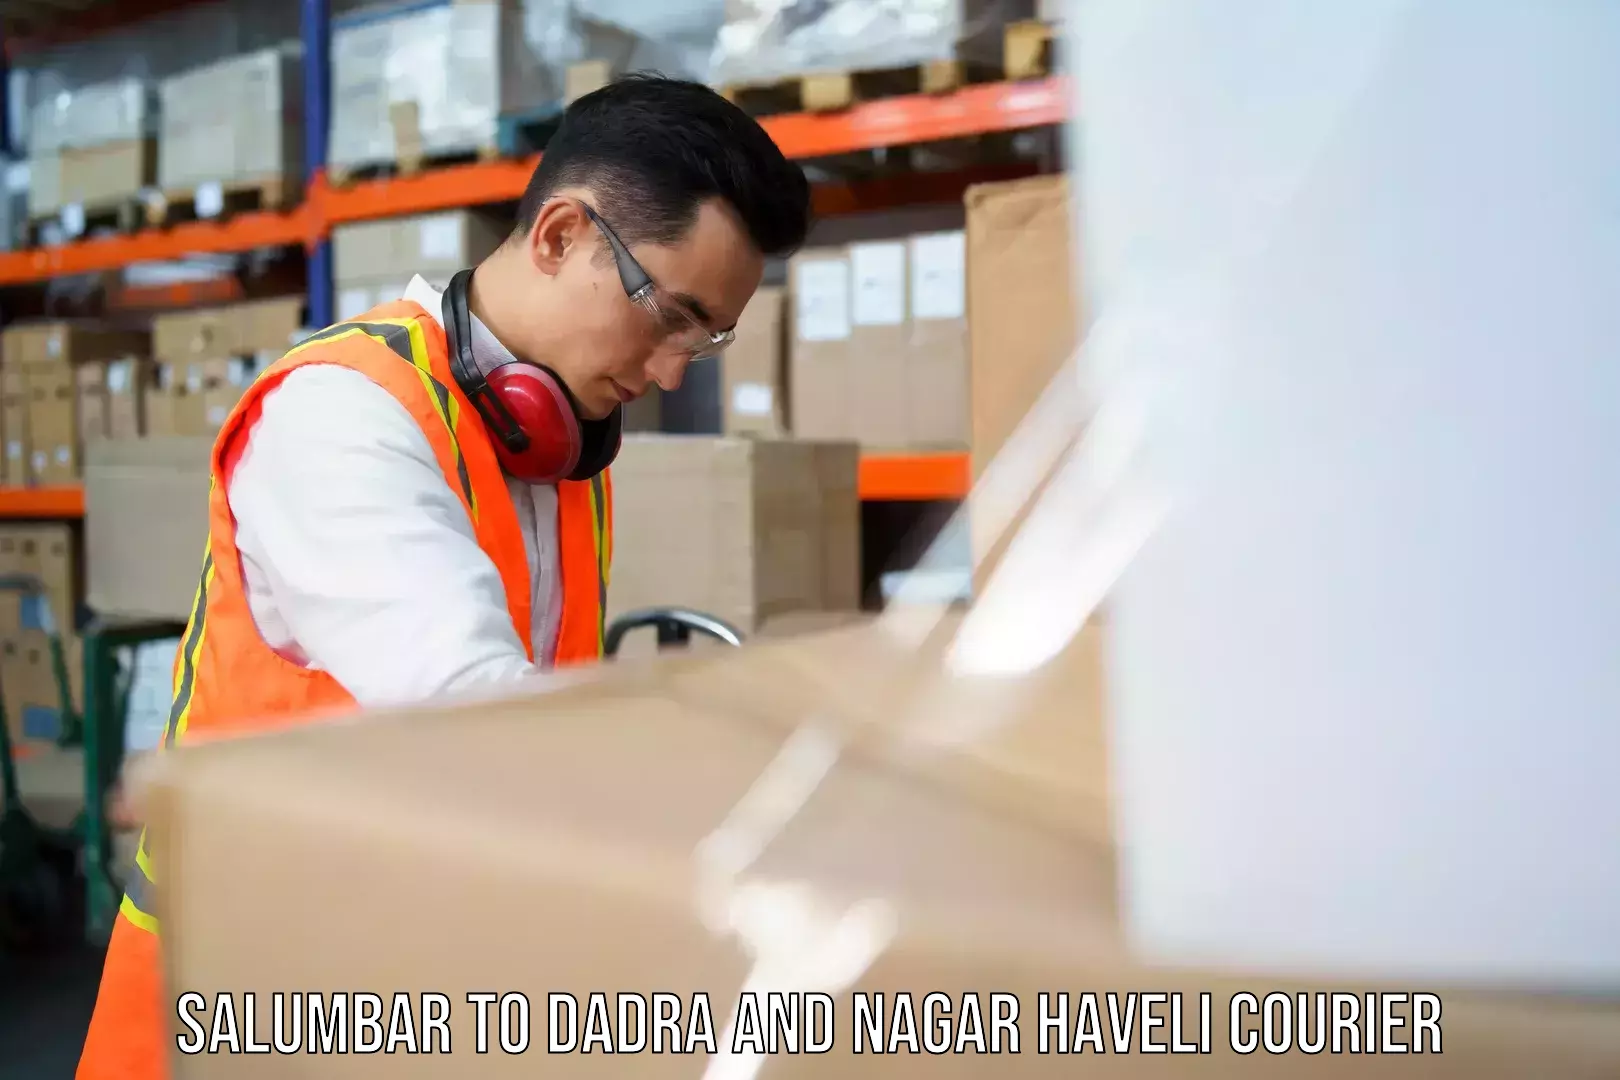 Cargo courier service Salumbar to Dadra and Nagar Haveli